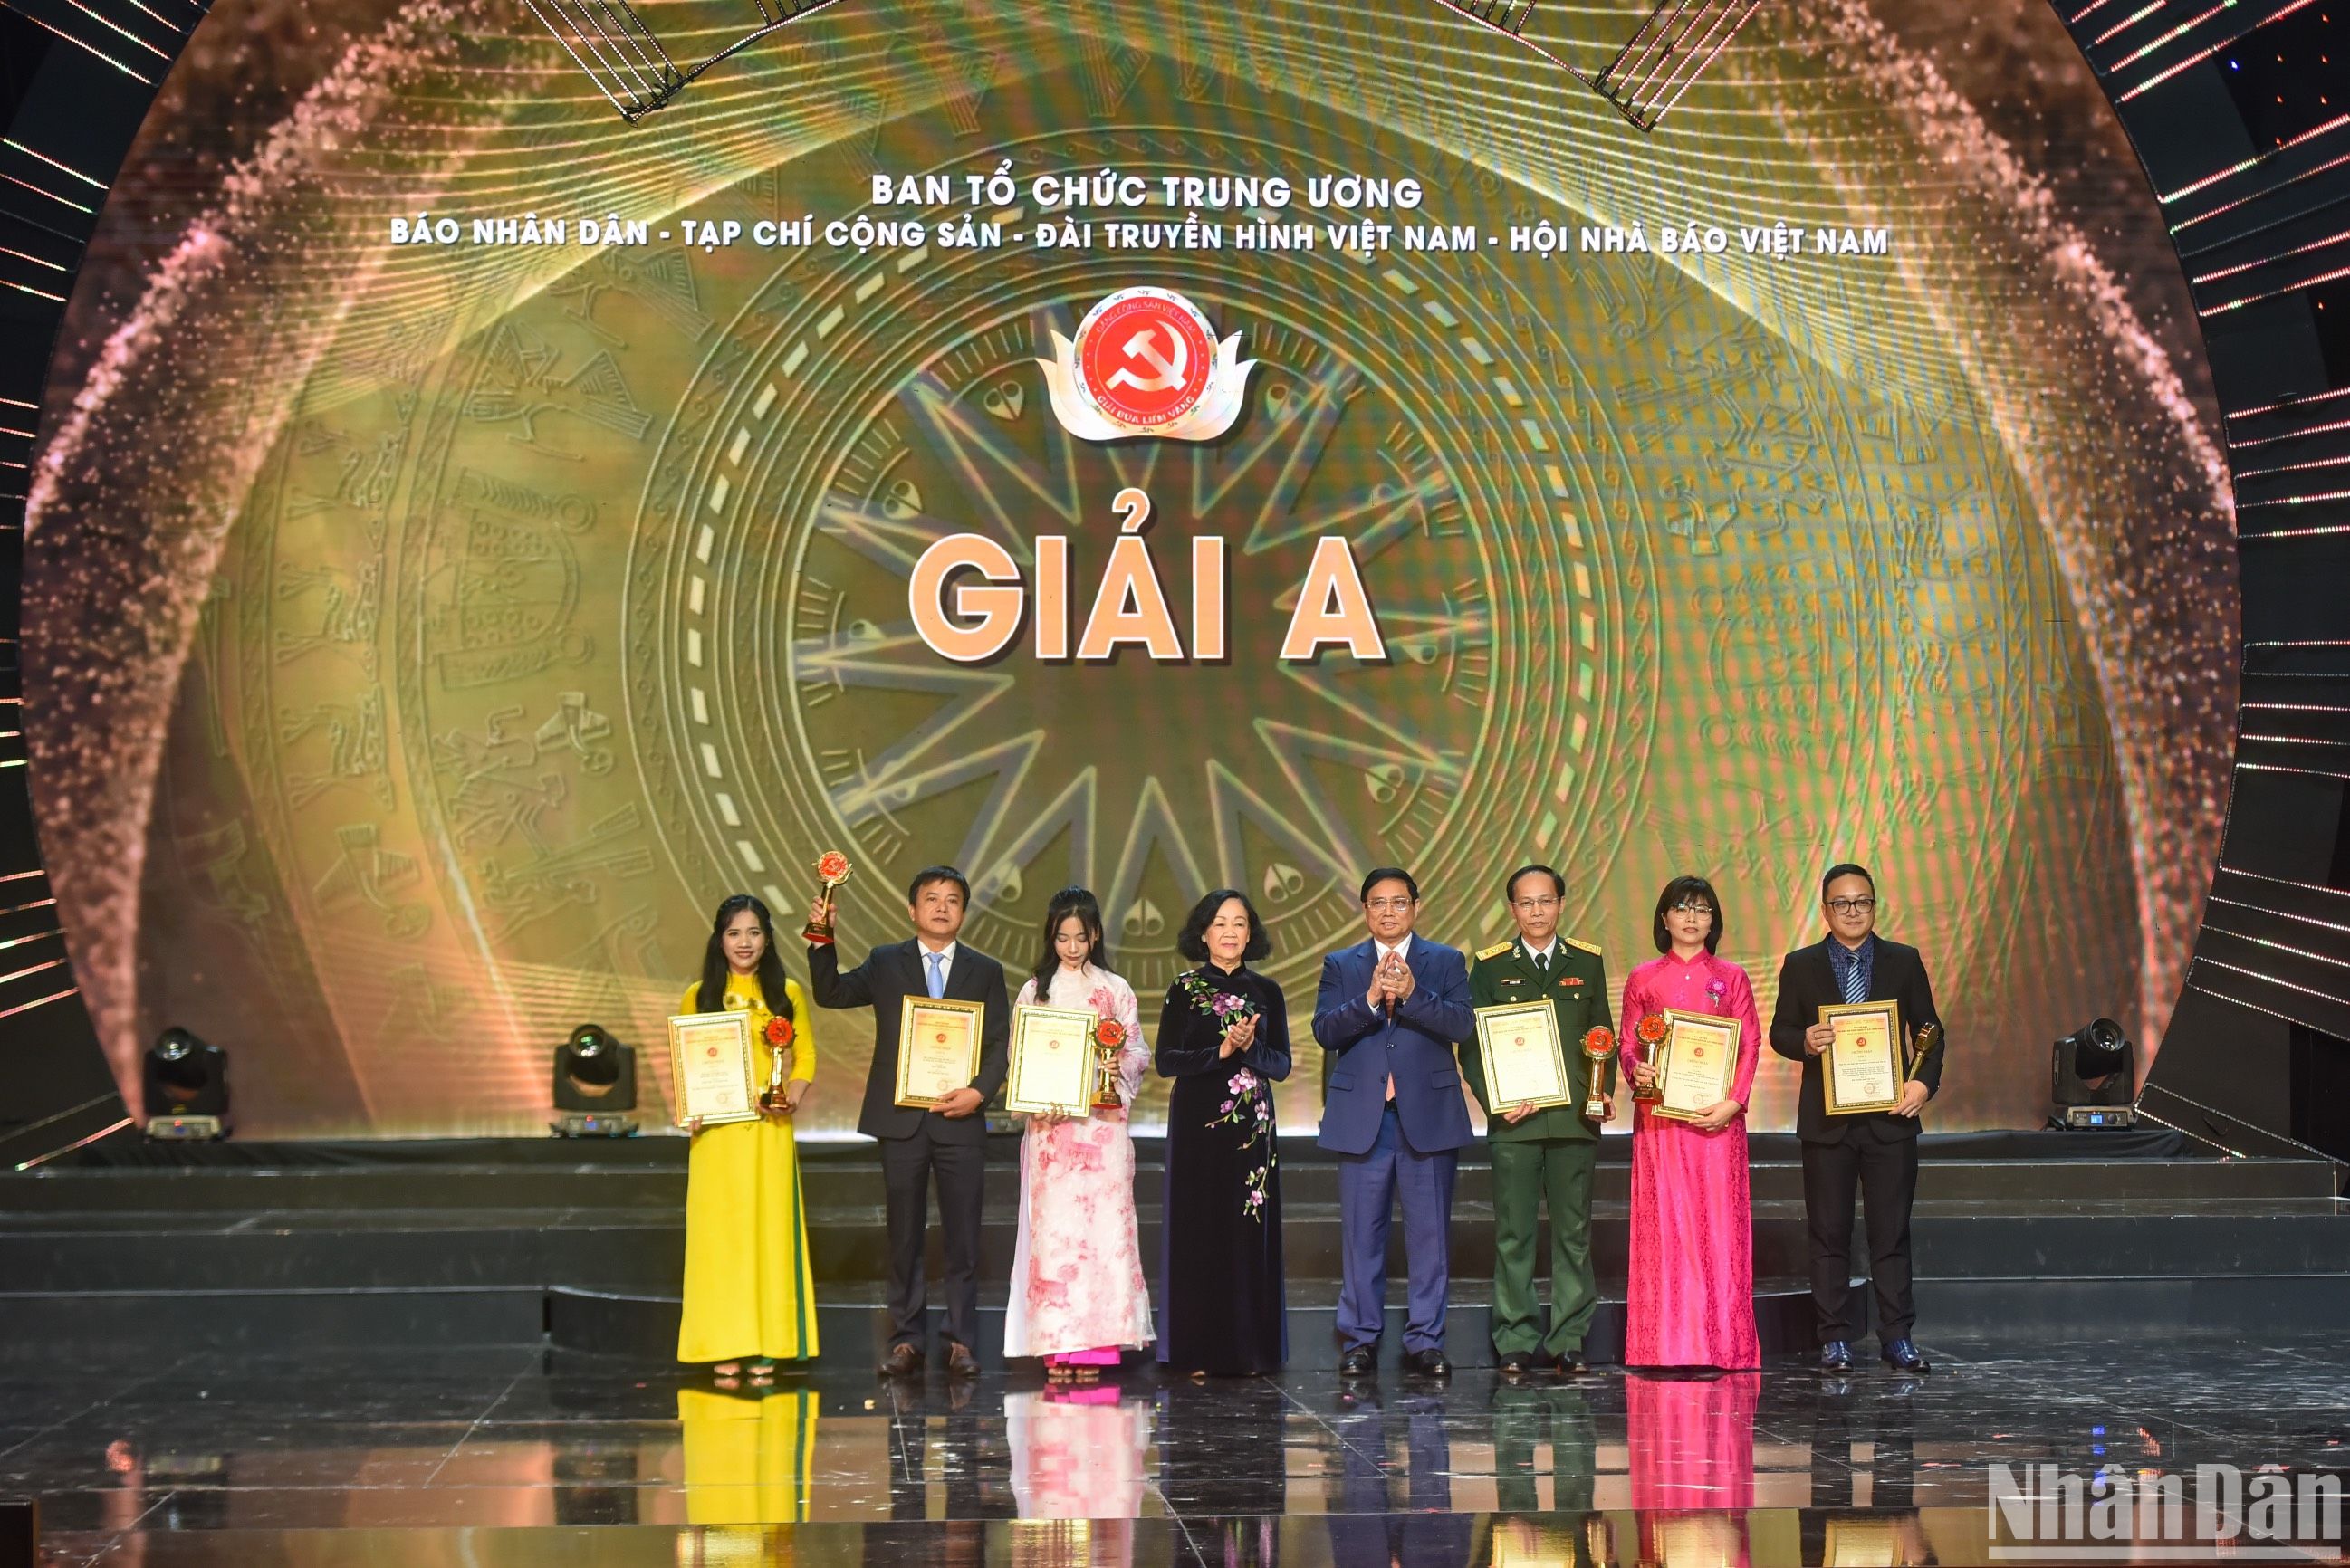 Periódico Nhan Dan triunfa en premios "La Hoz y el Martillo Dorados"